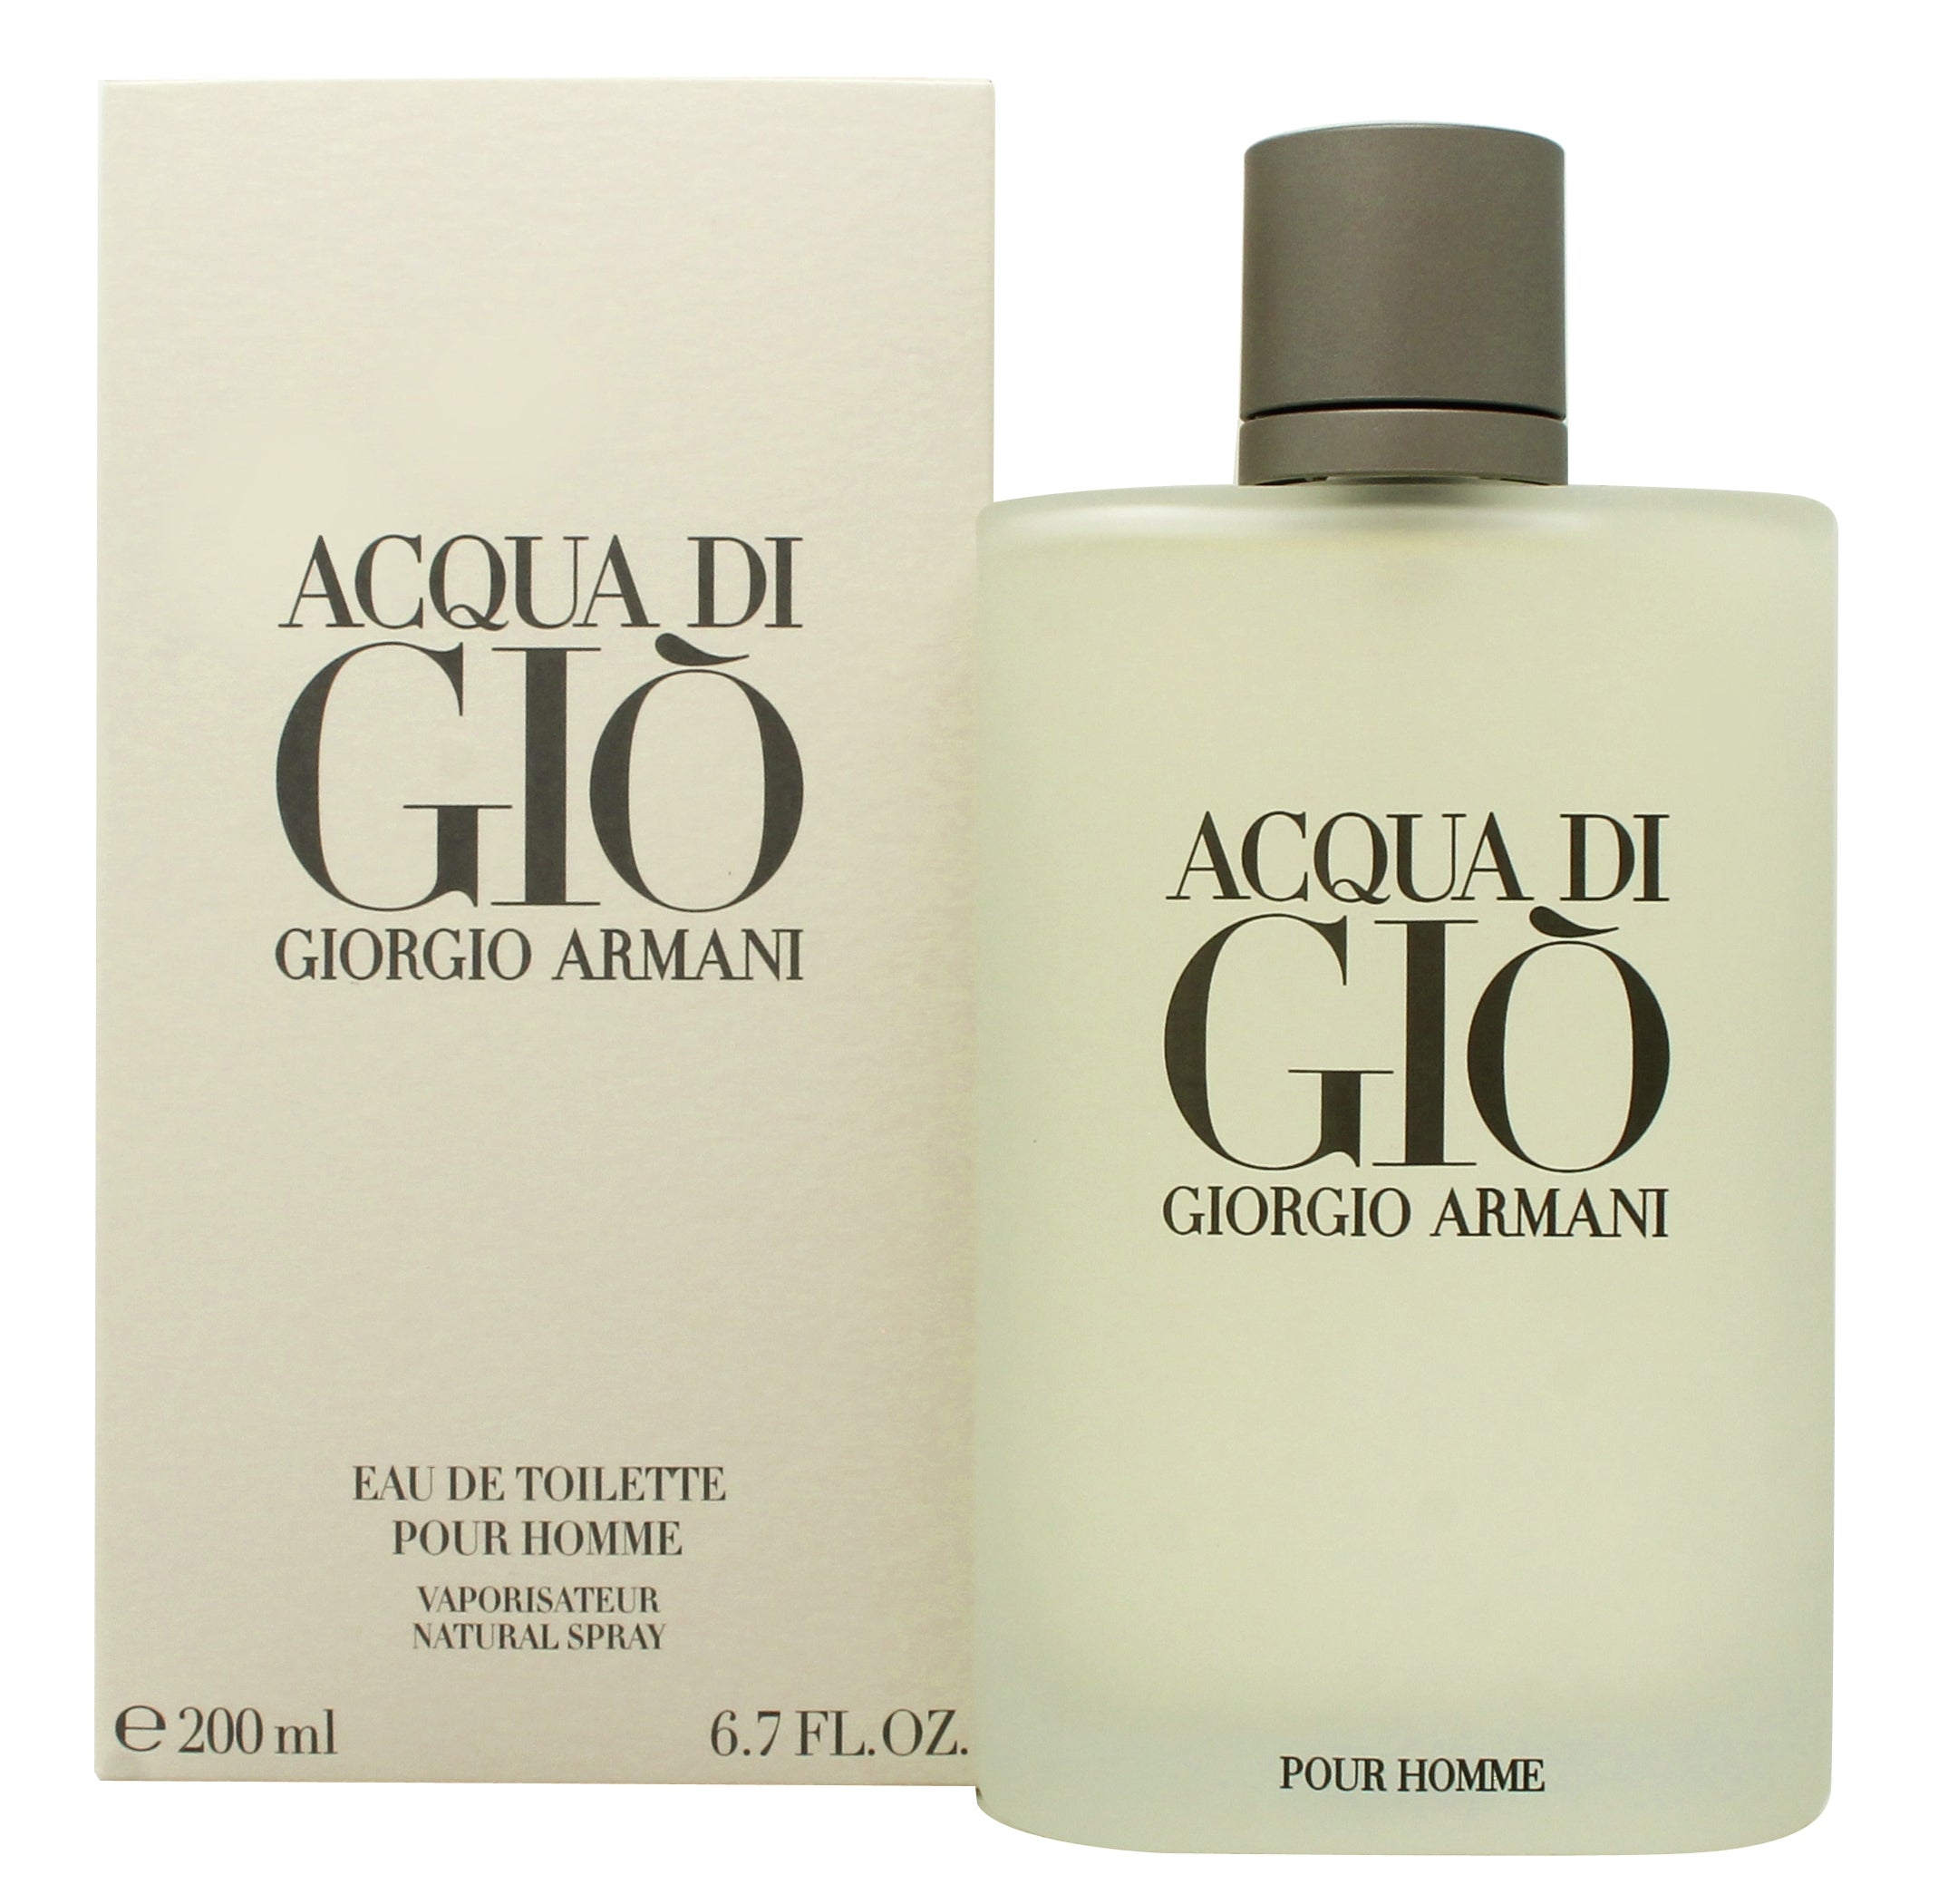 View Giorgio Armani Acqua Di Gio Eau De Toilette 200ml Spray information